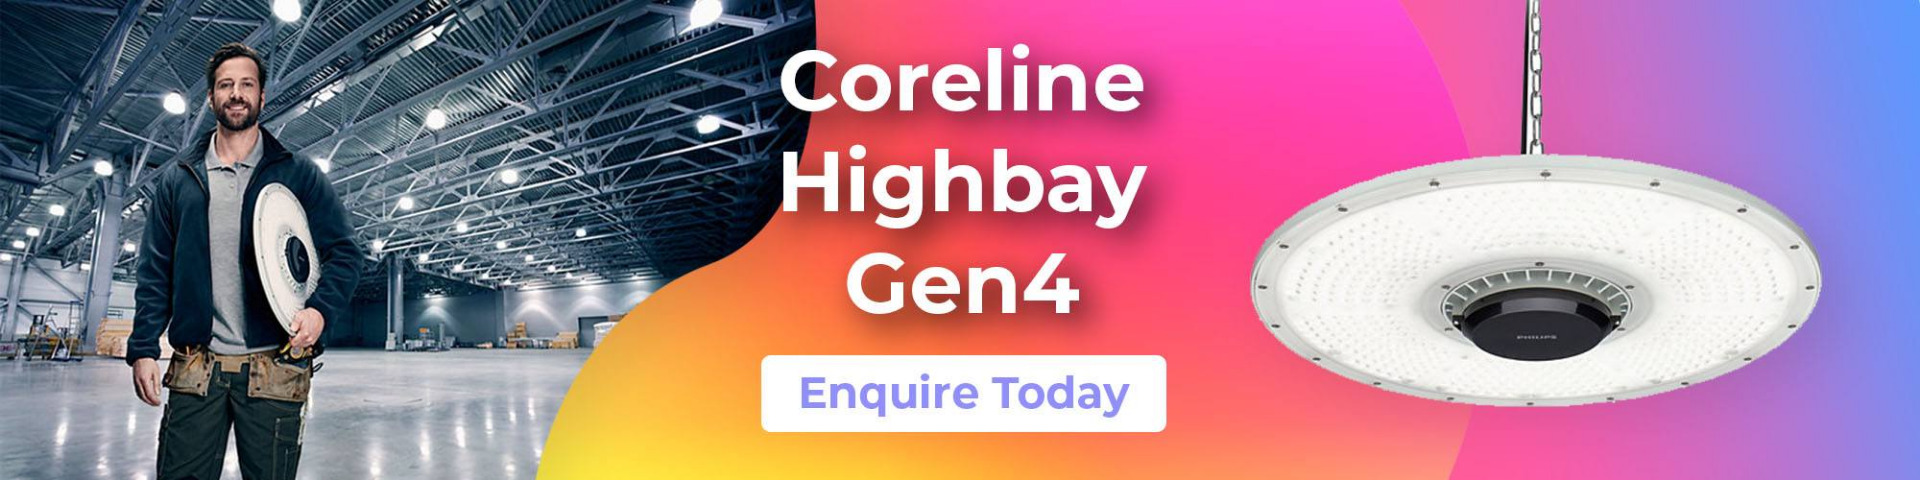 Coreline-Highbay-Gen-4